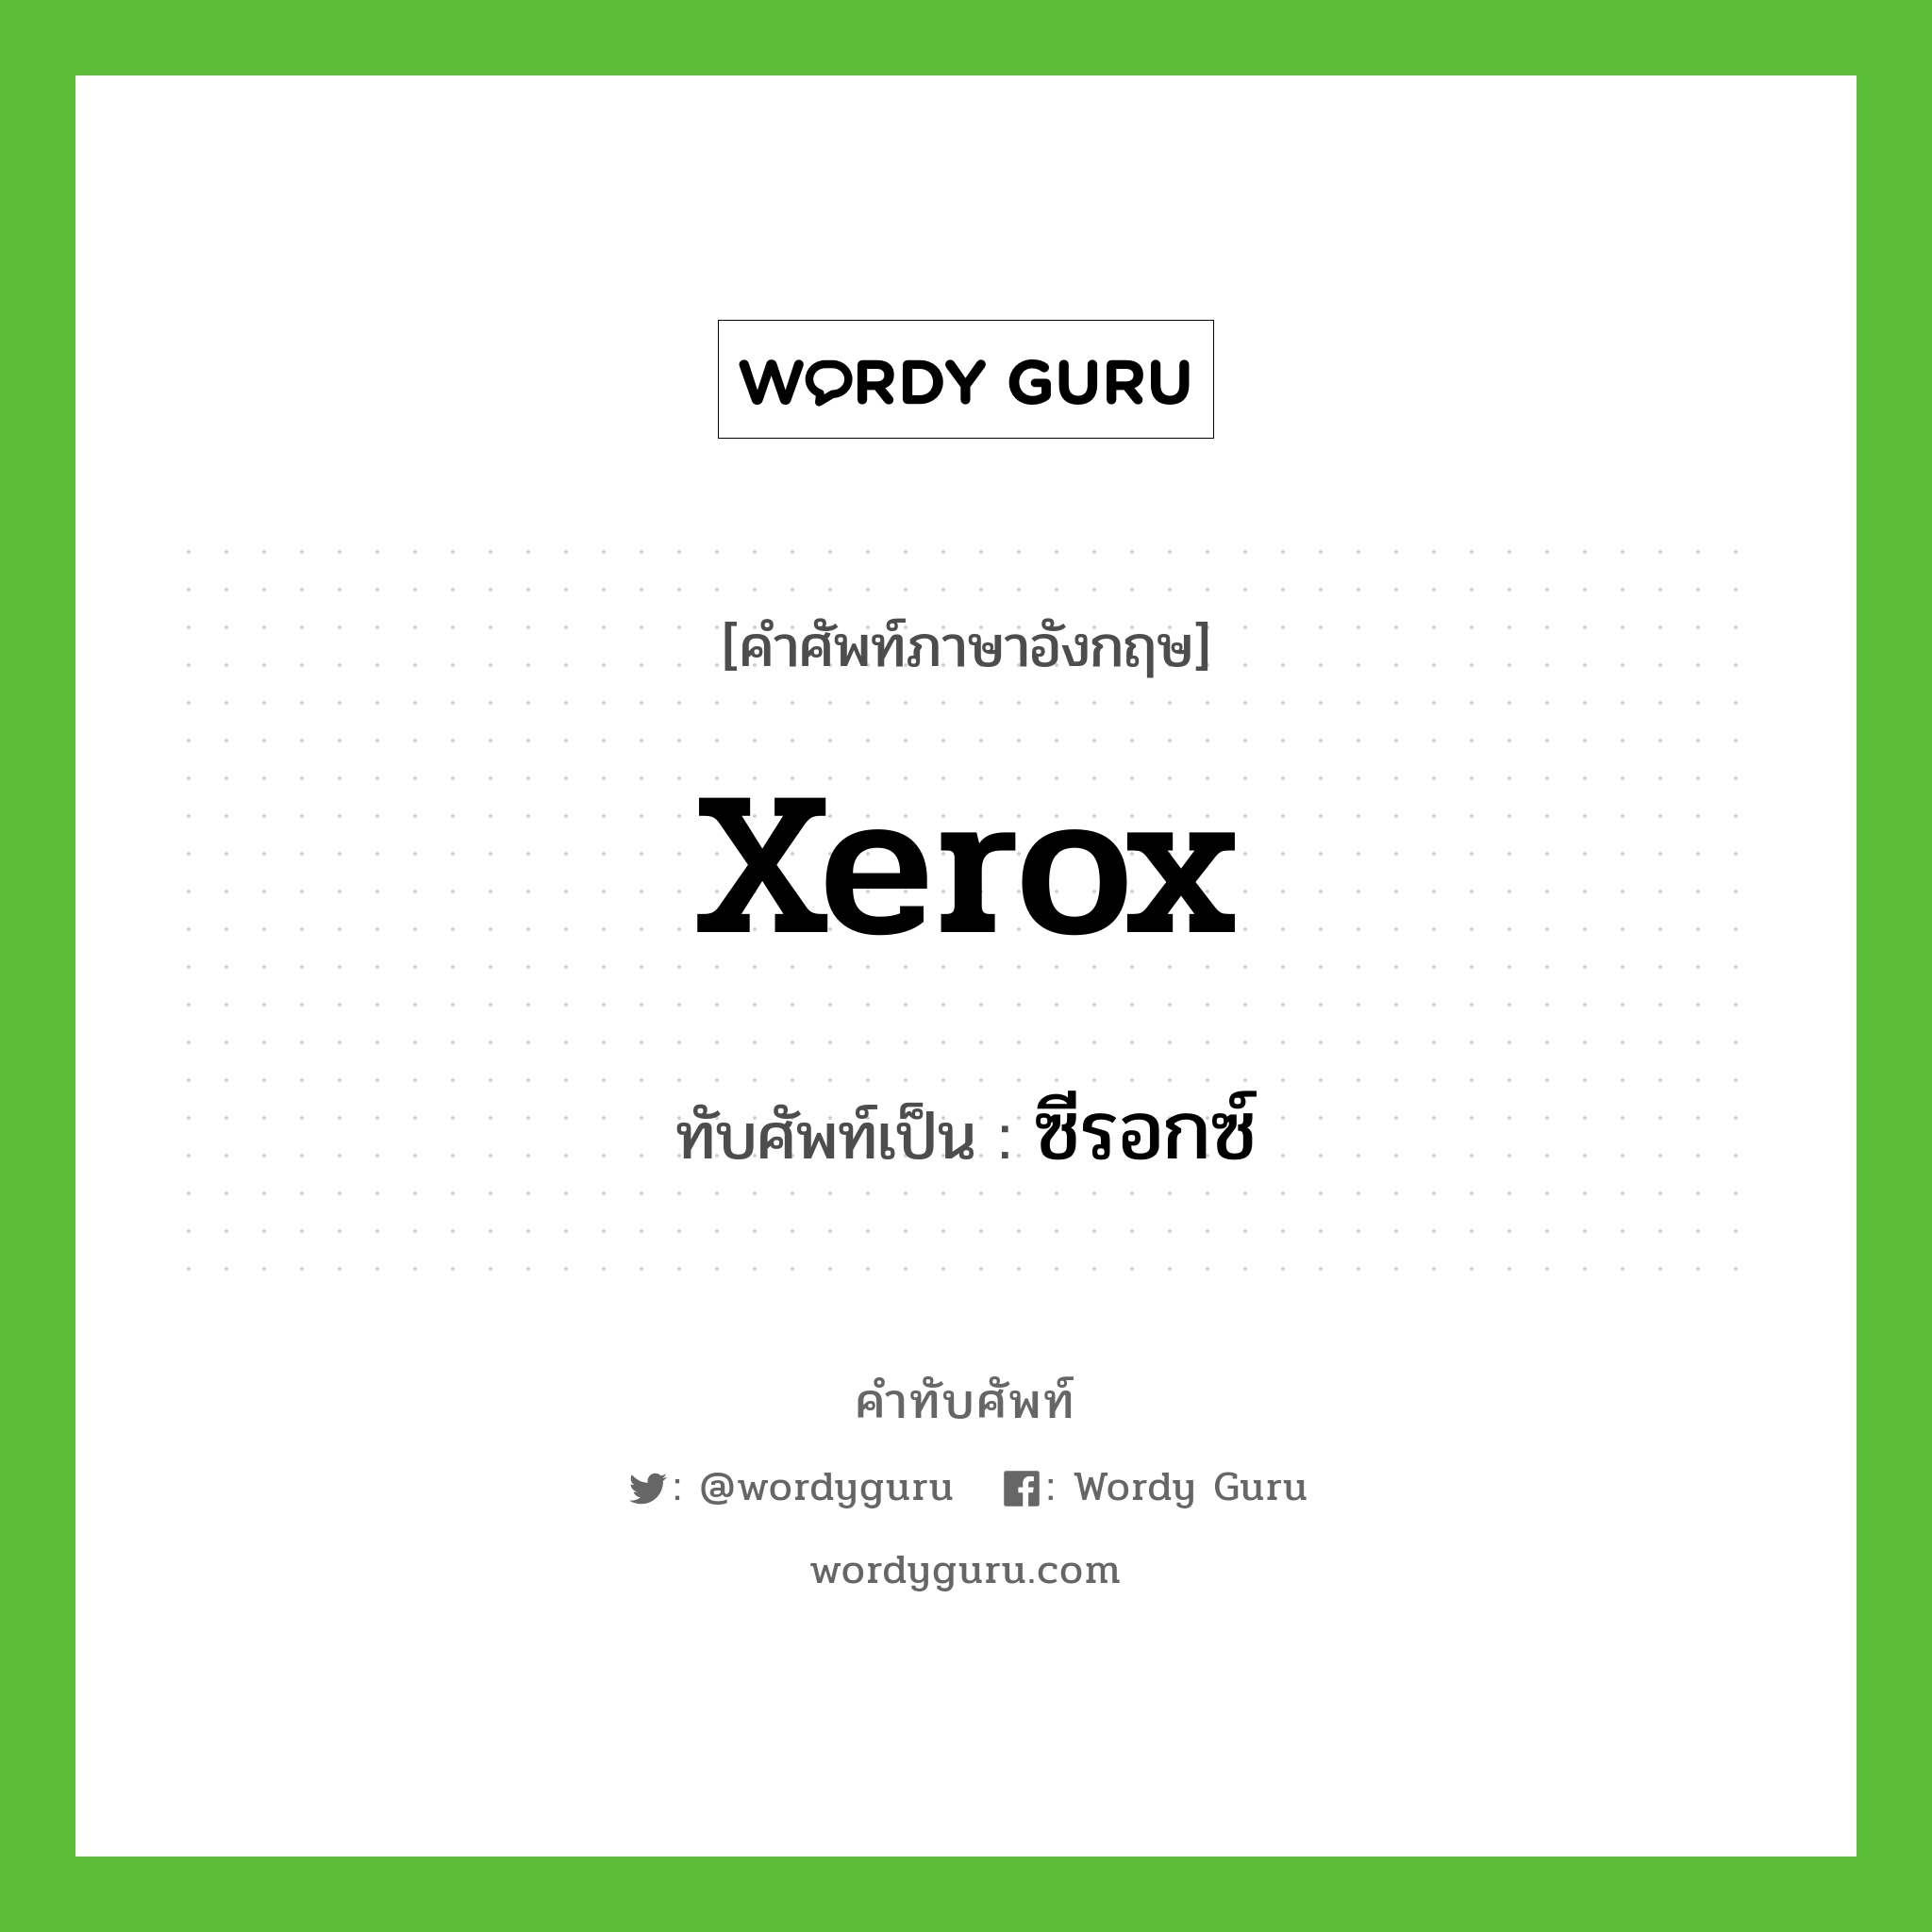 ซีรอกซ์ เขียนอย่างไร?, คำศัพท์ภาษาอังกฤษ ซีรอกซ์ ทับศัพท์เป็น Xerox